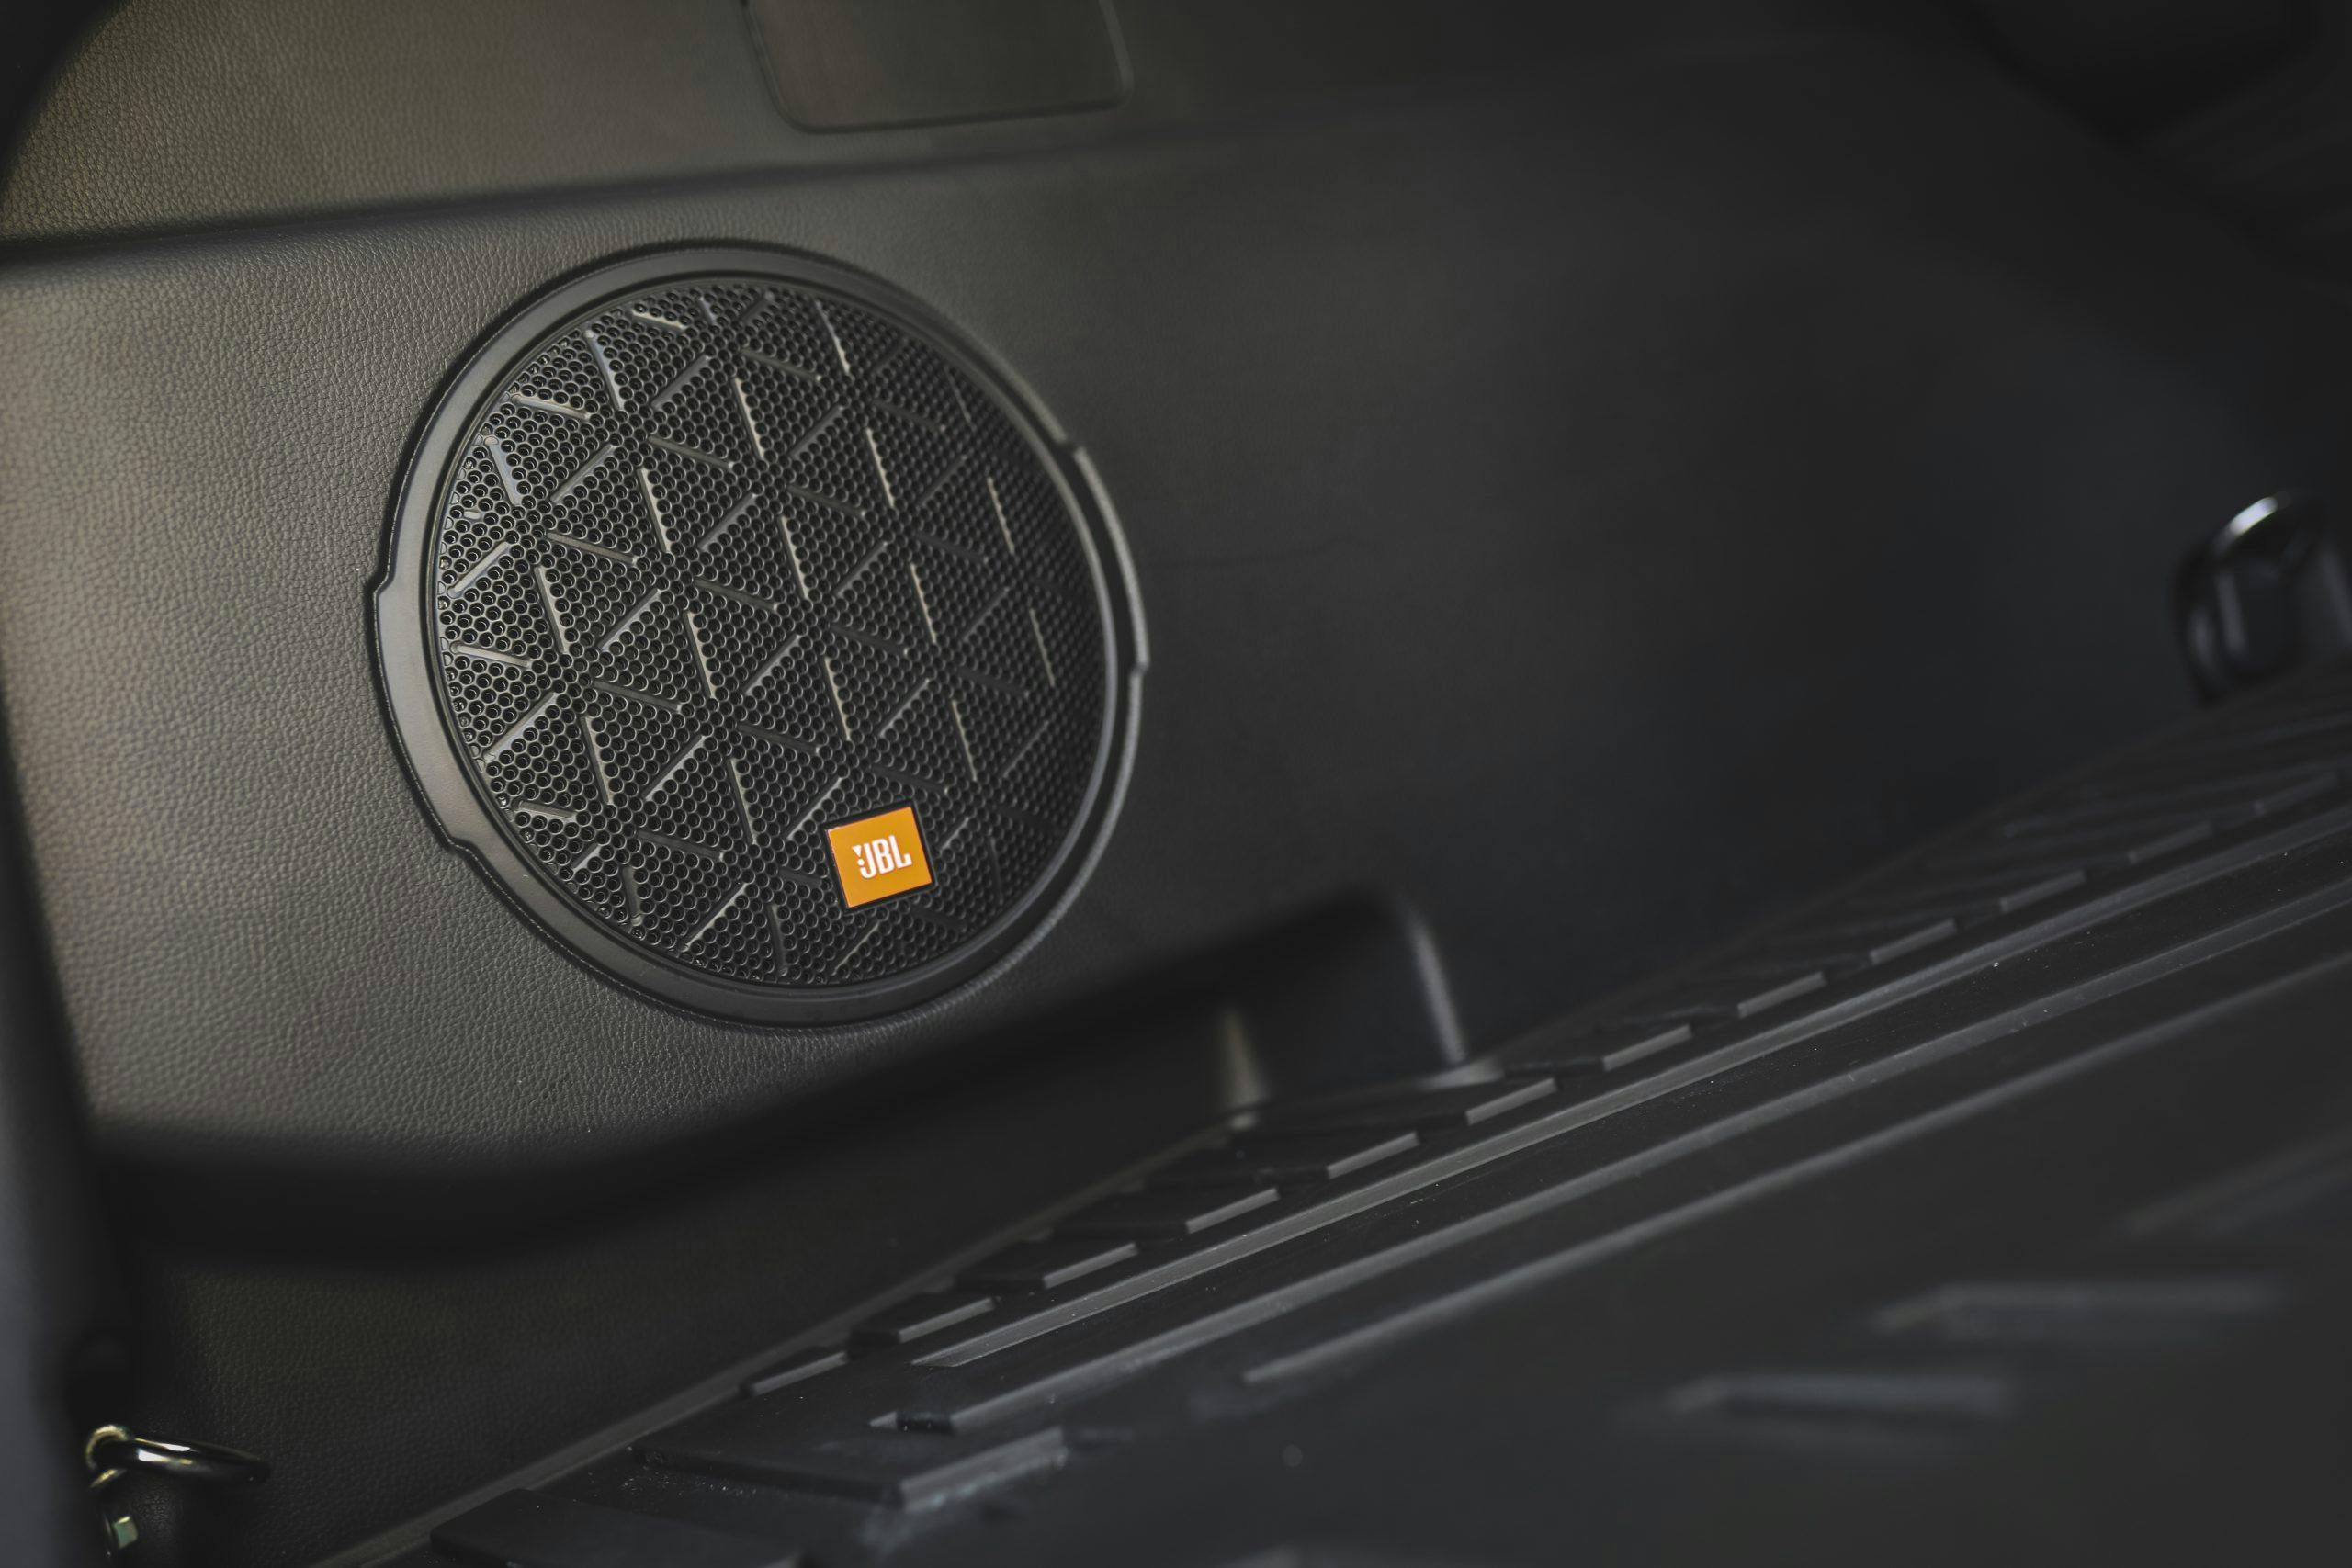 2020 Toyota RAV4 TRD Off-Road SUV stereo speaker